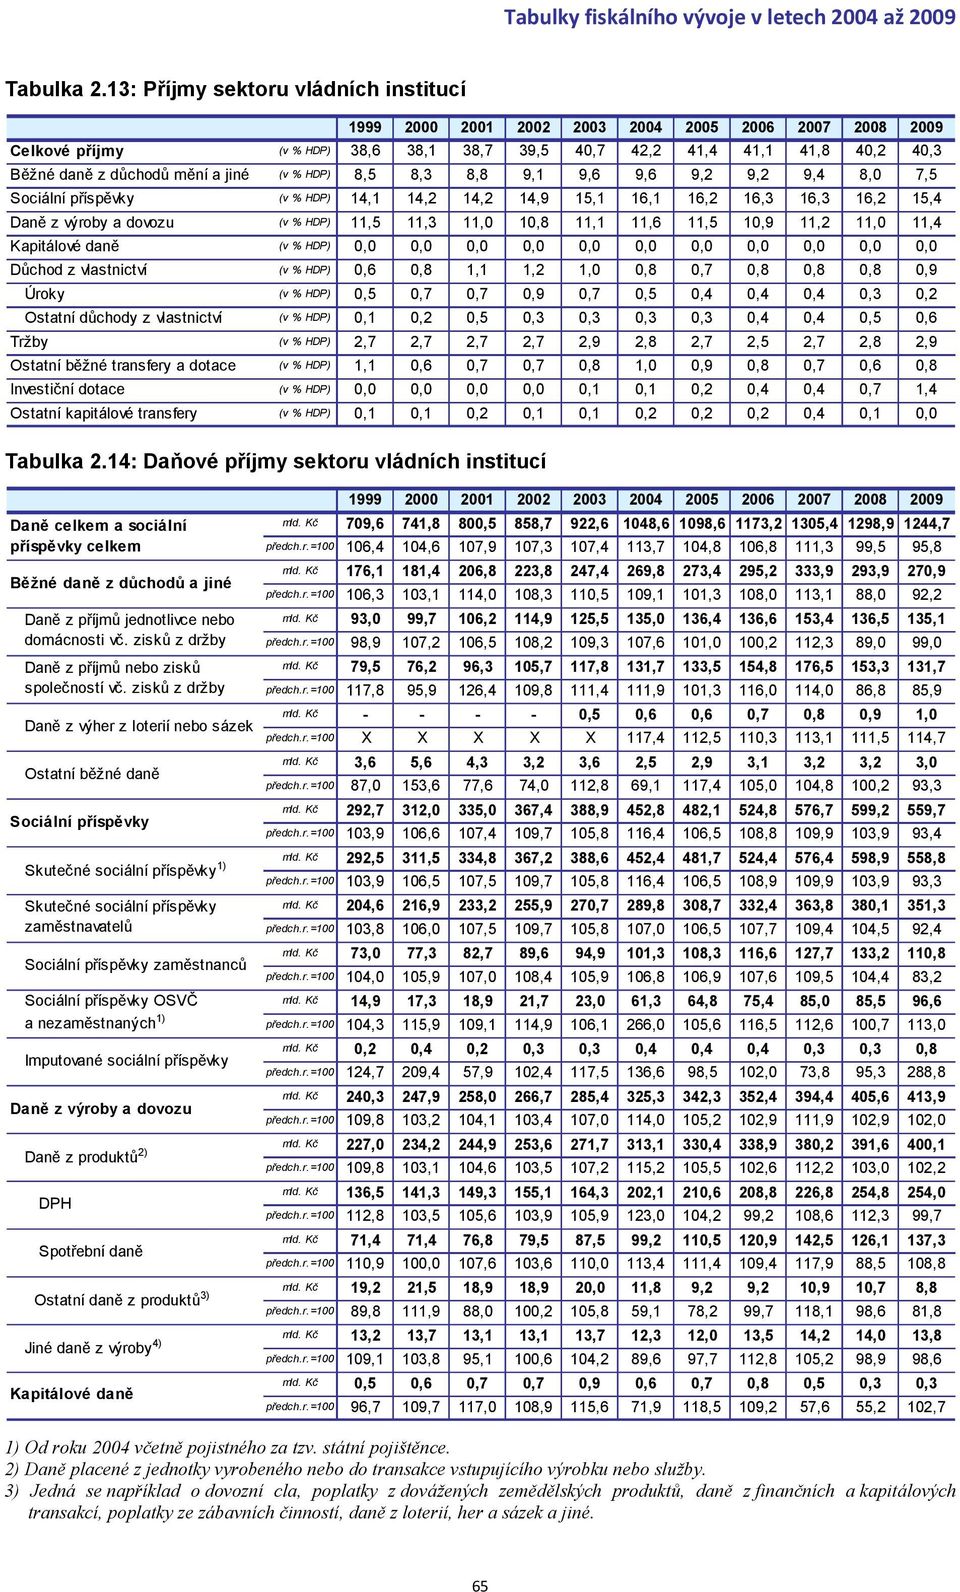 8,0 7,5 Sociální příspěvky (v % HDP) 14,1 14,2 14,2 14,9 15,1 16,1 16,2 16,3 16,3 16,2 15,4 Daně z výroby a dovozu (v % HDP) 11,5 11,3 11,0 10,8 11,1 11,6 11,5 10,9 11,2 11,0 11,4 Kapitálové daně (v